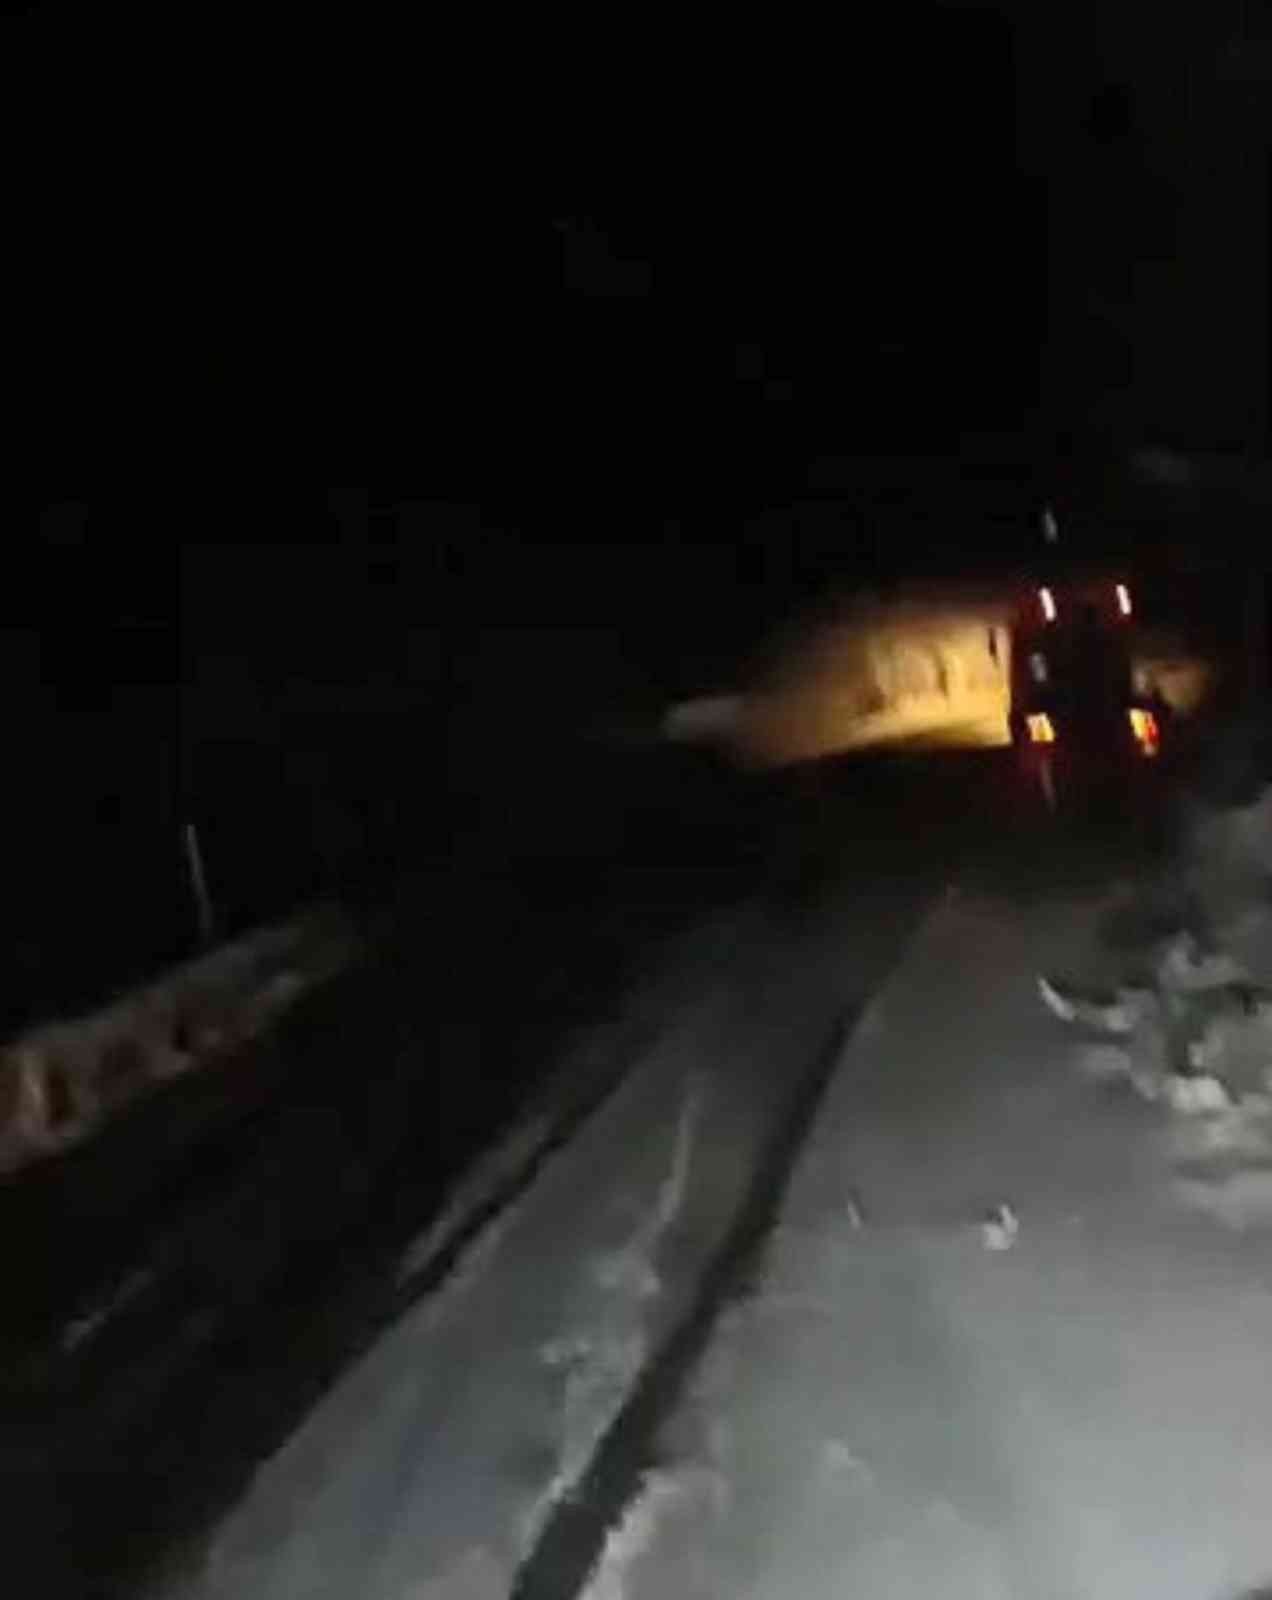 Kastamonu’da kar yağışı yolu kapattı, araçlar mahsur kaldı #kastamonu